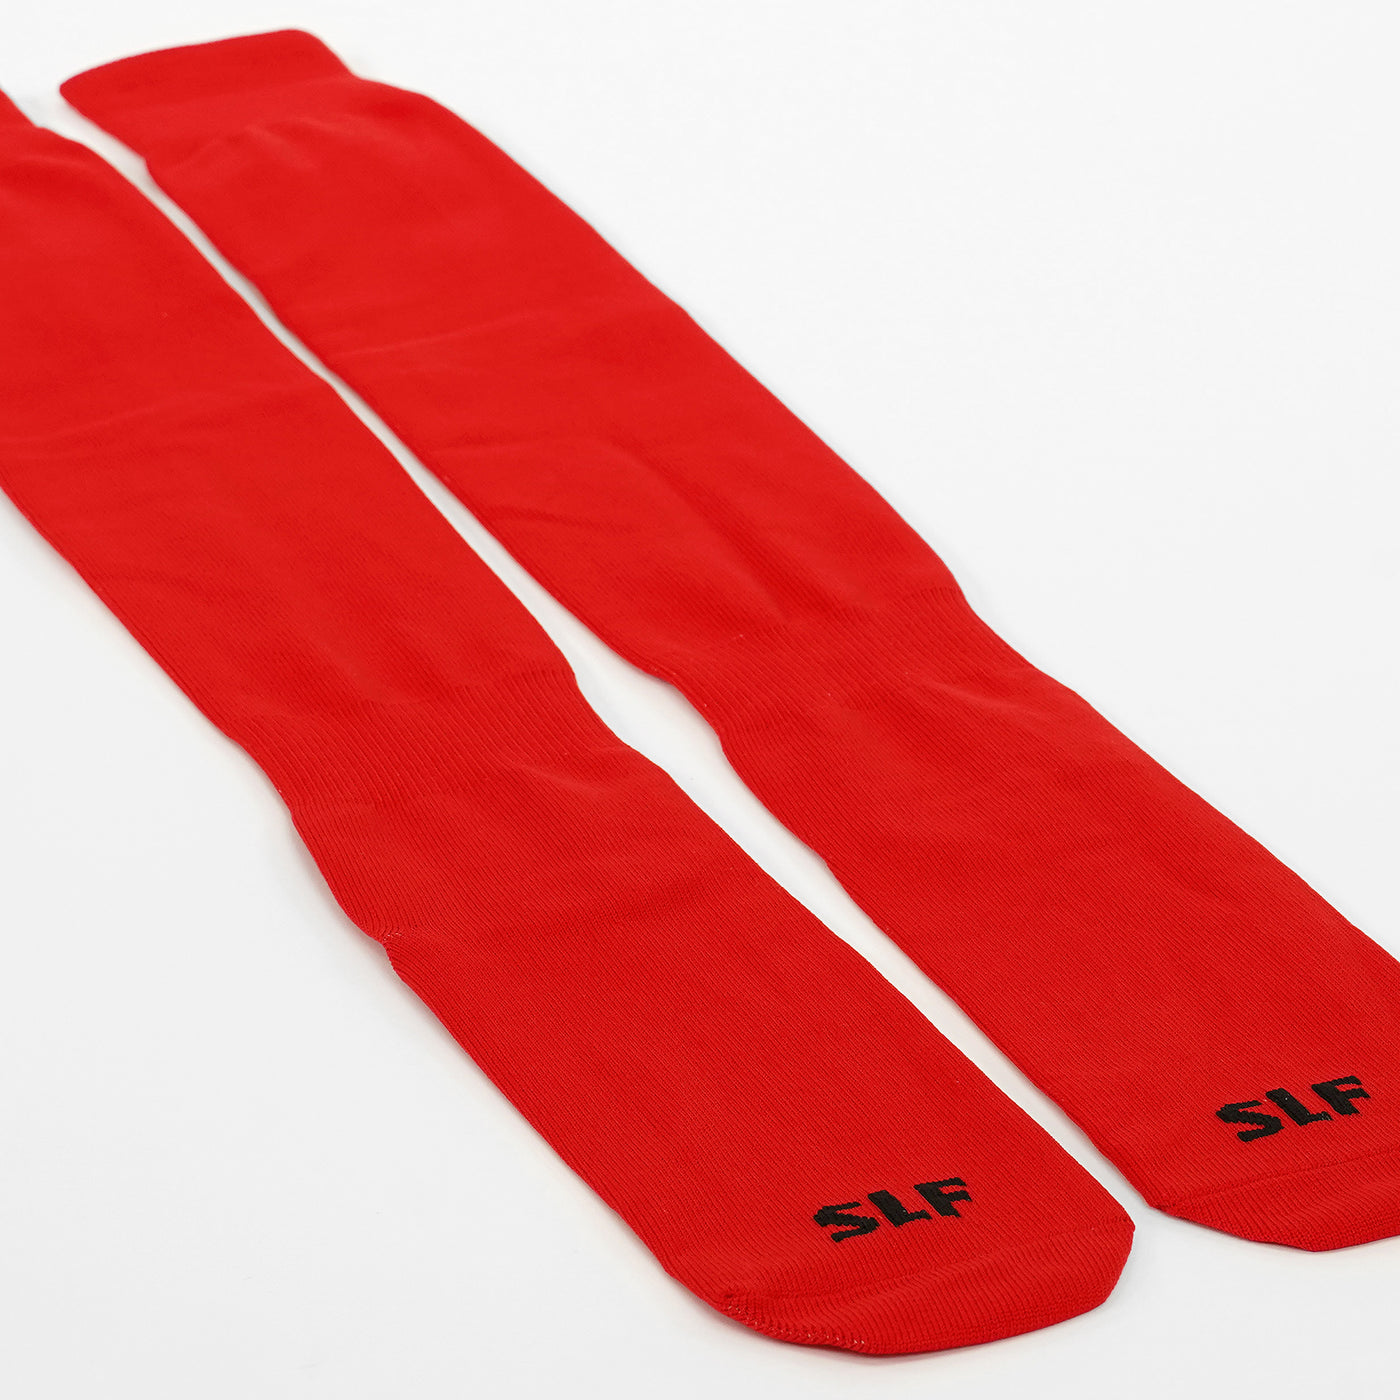 Hue Red Long Scrunchie Socks